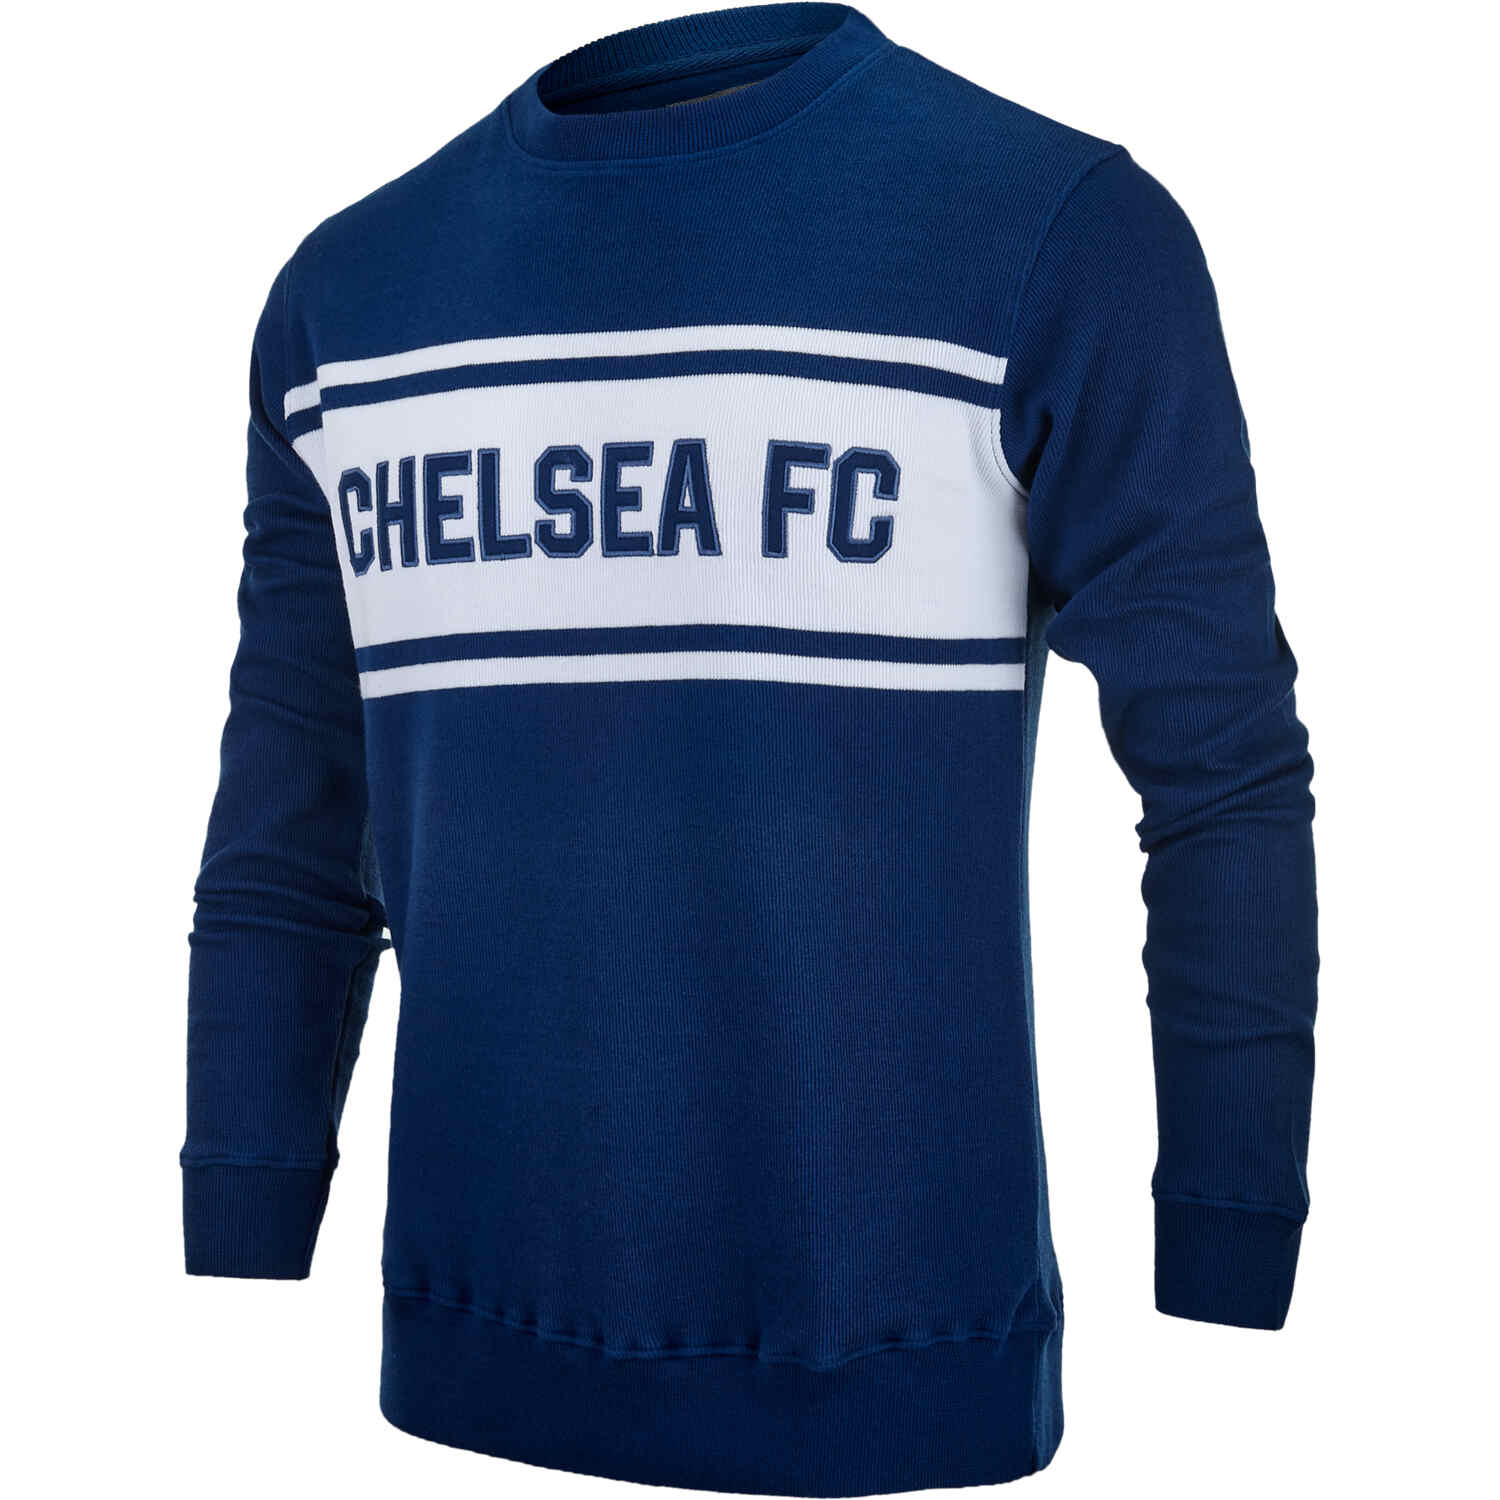 Chelsea Knit Sweater - Navy/White - SoccerPro